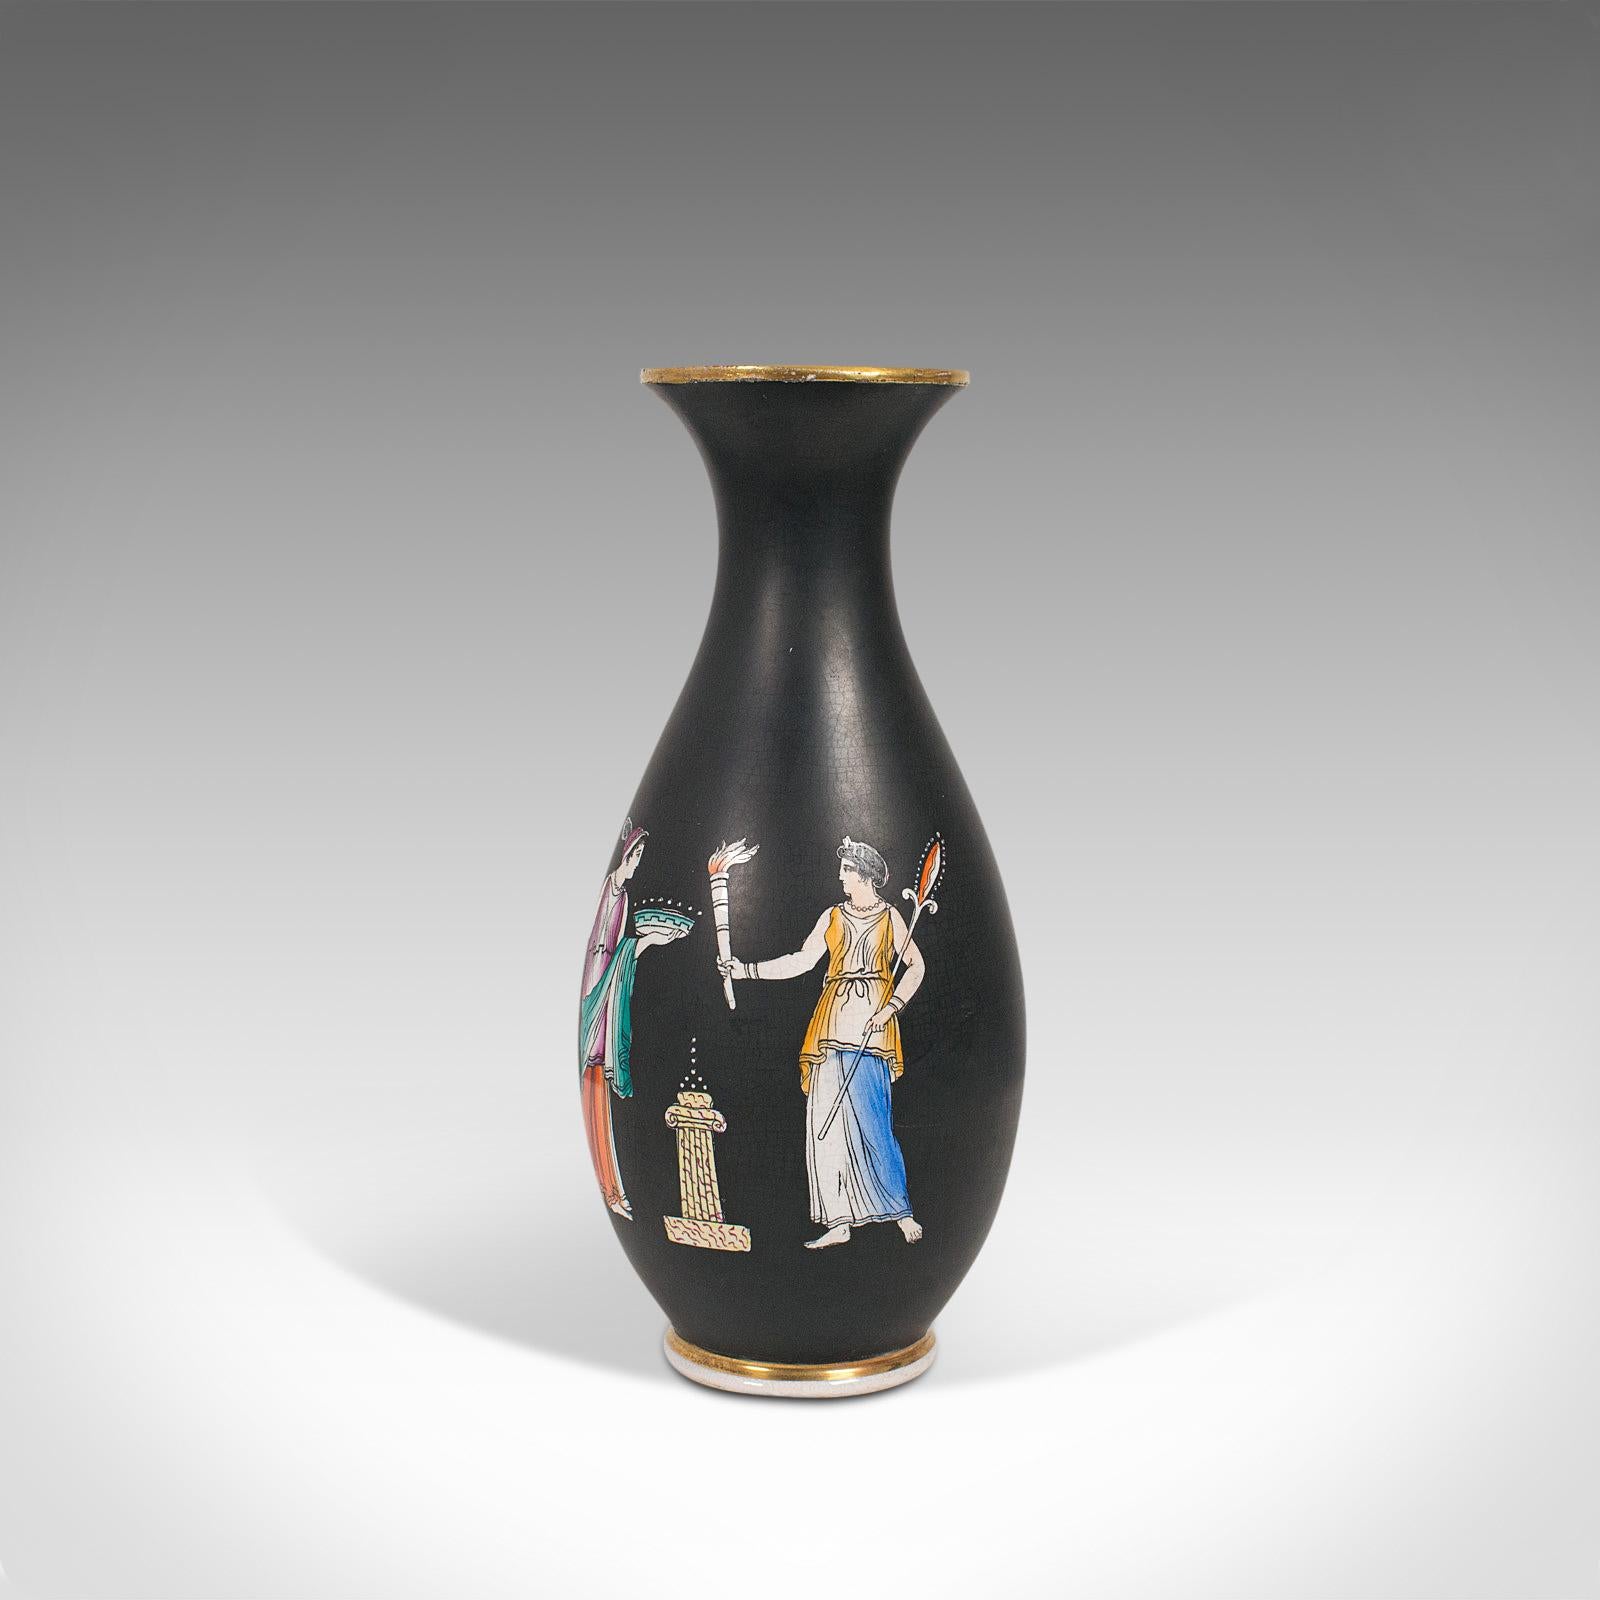 British Antique Decorative Vase, English, Ceramic, Baluster Urn, Neoclassical, Victorian